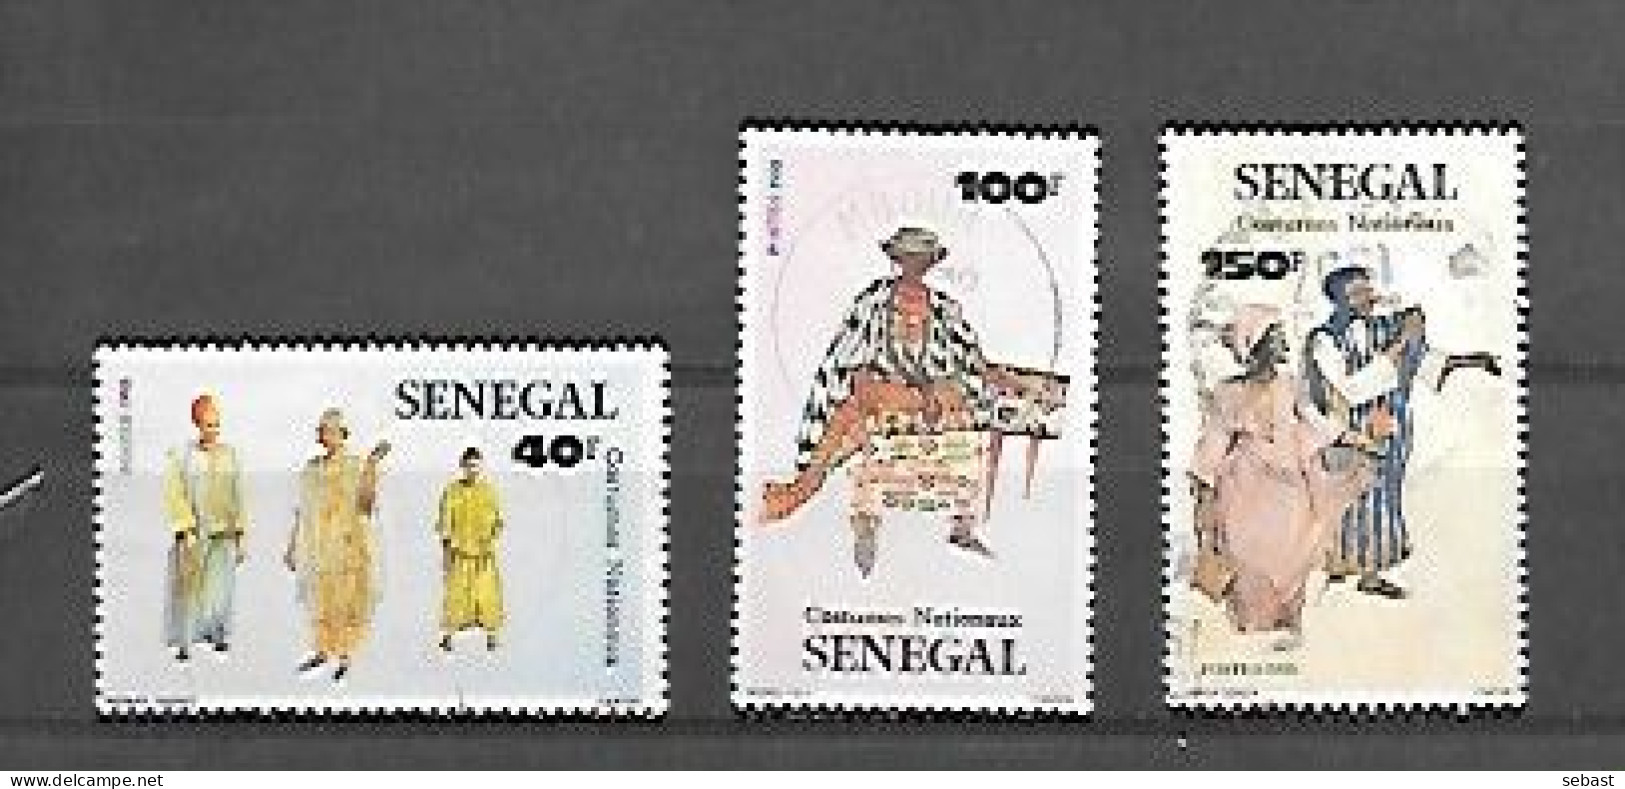 TIMBRE OBLITERE DU SENEGAL DE 1985 N° MICHEL 857 859/60 - Sénégal (1960-...)